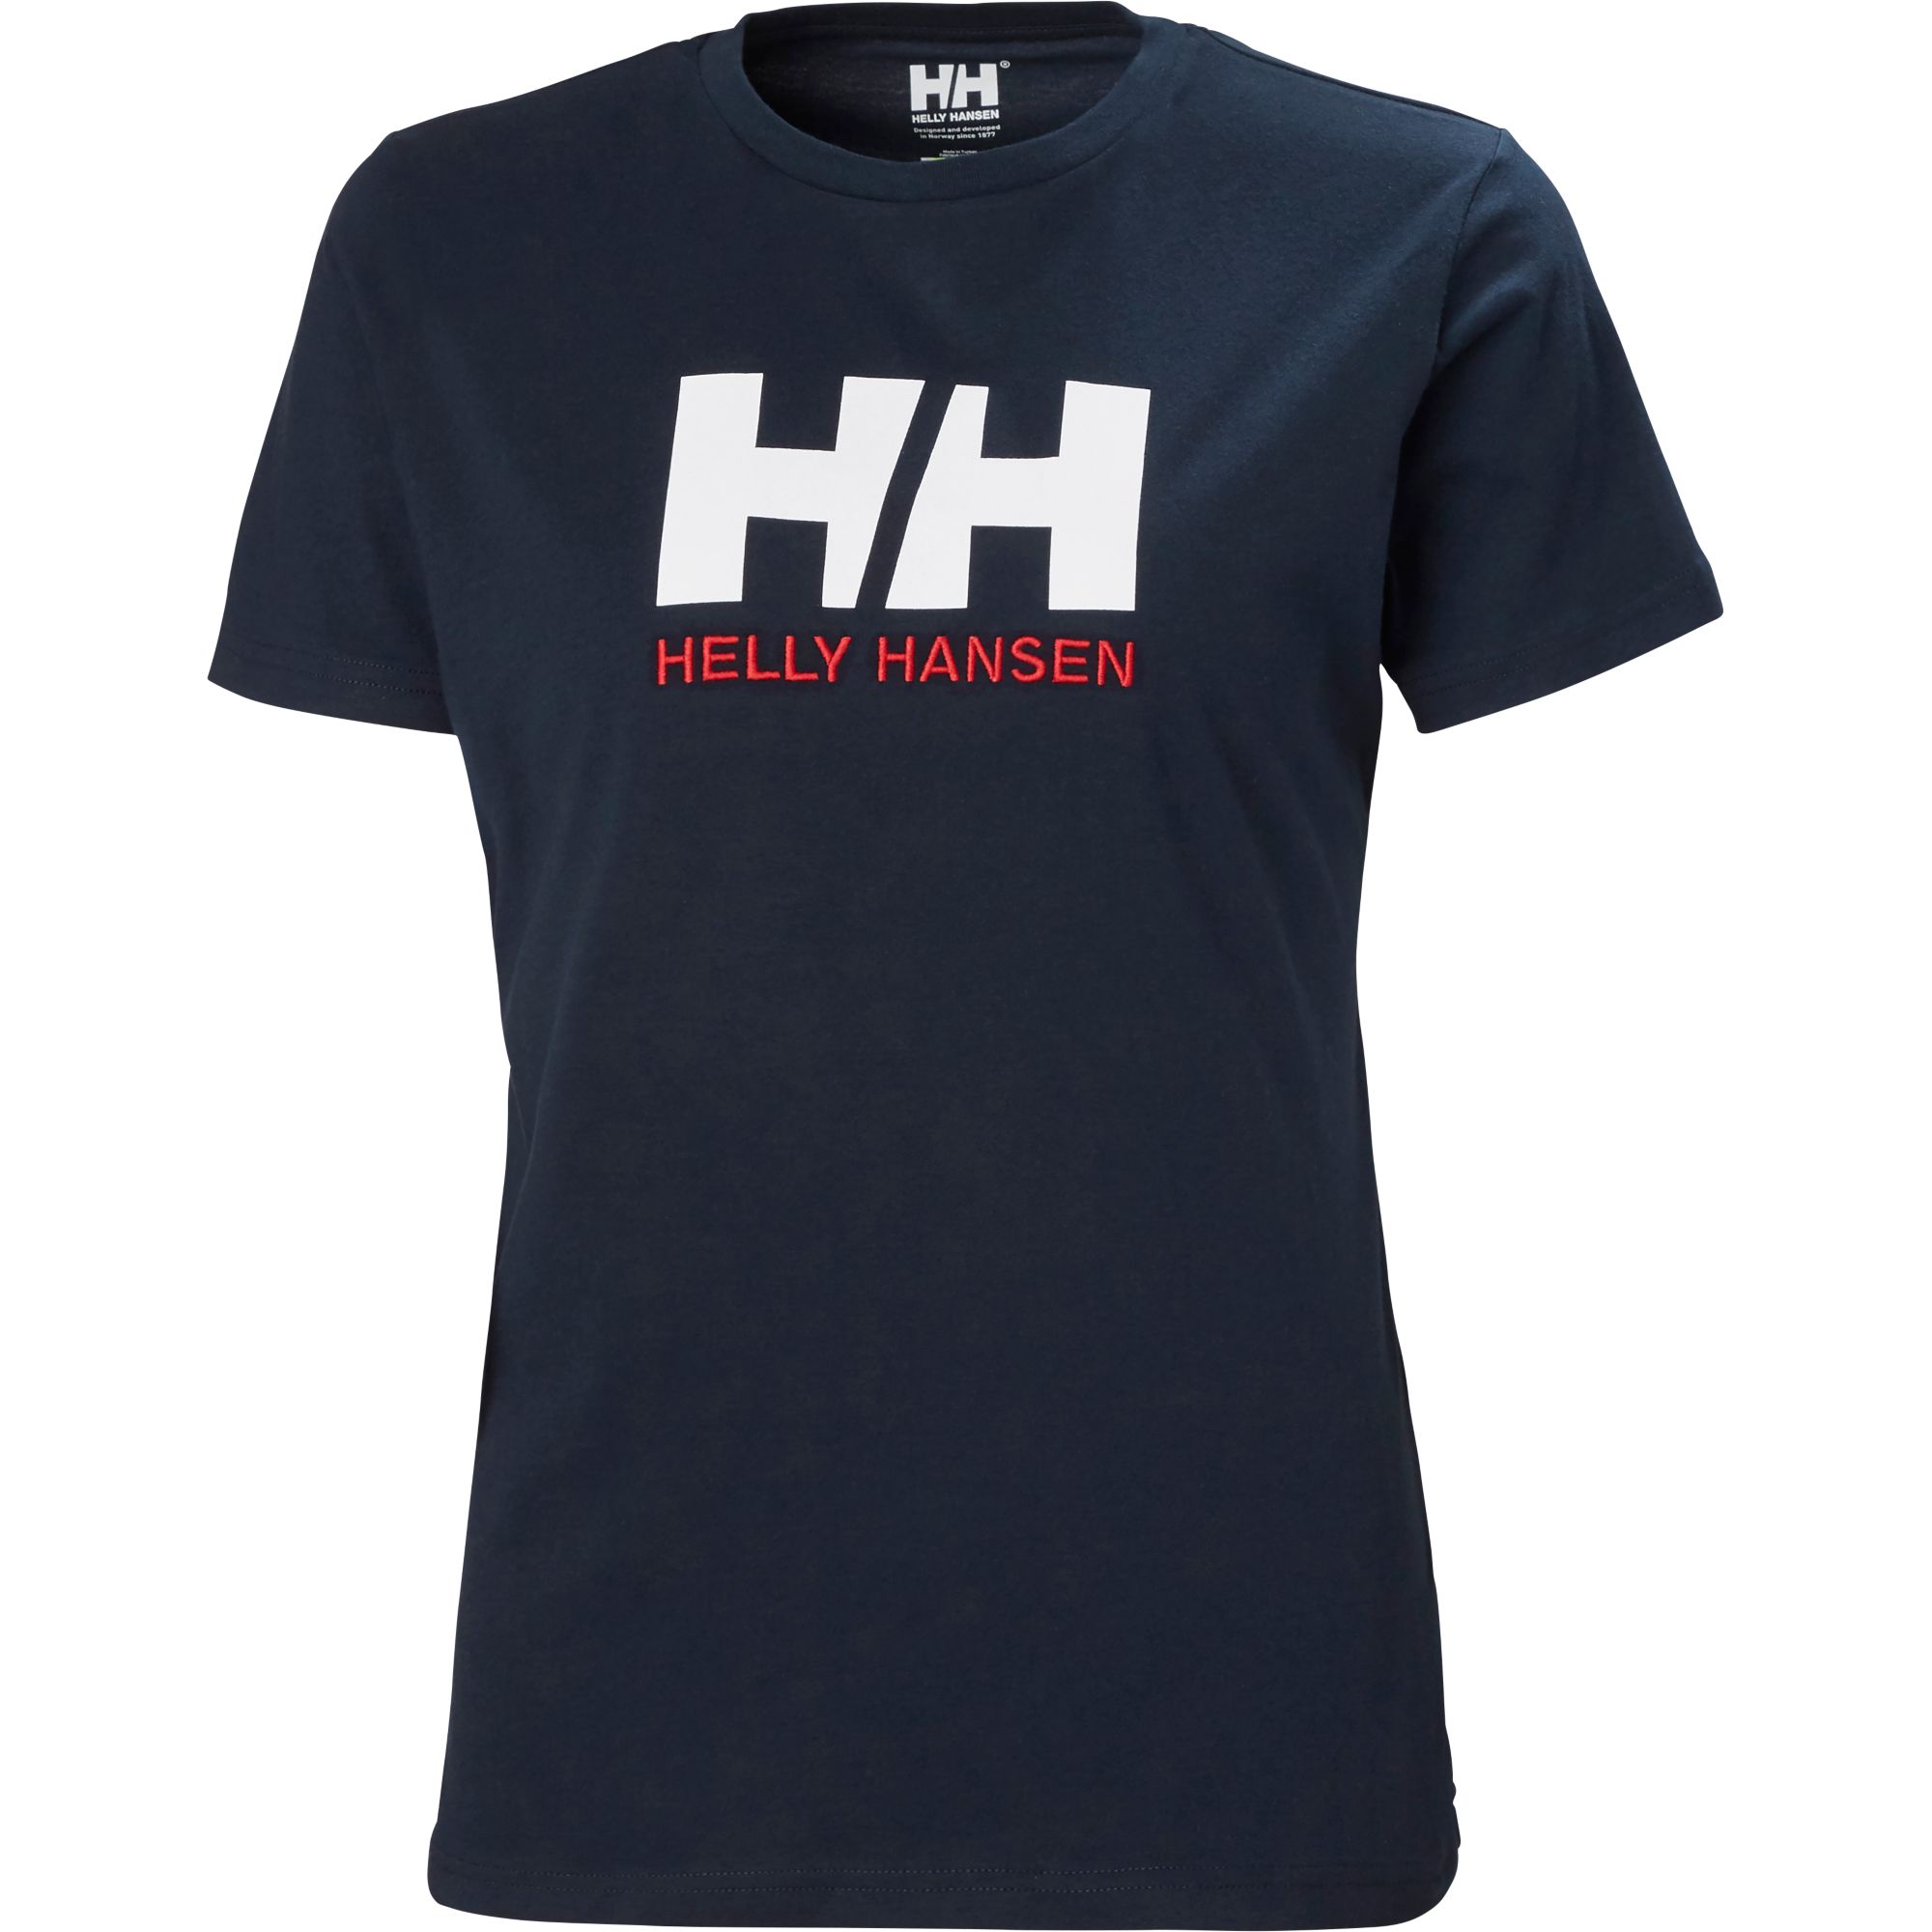 Hh Logo Helly Hansen - 2940014